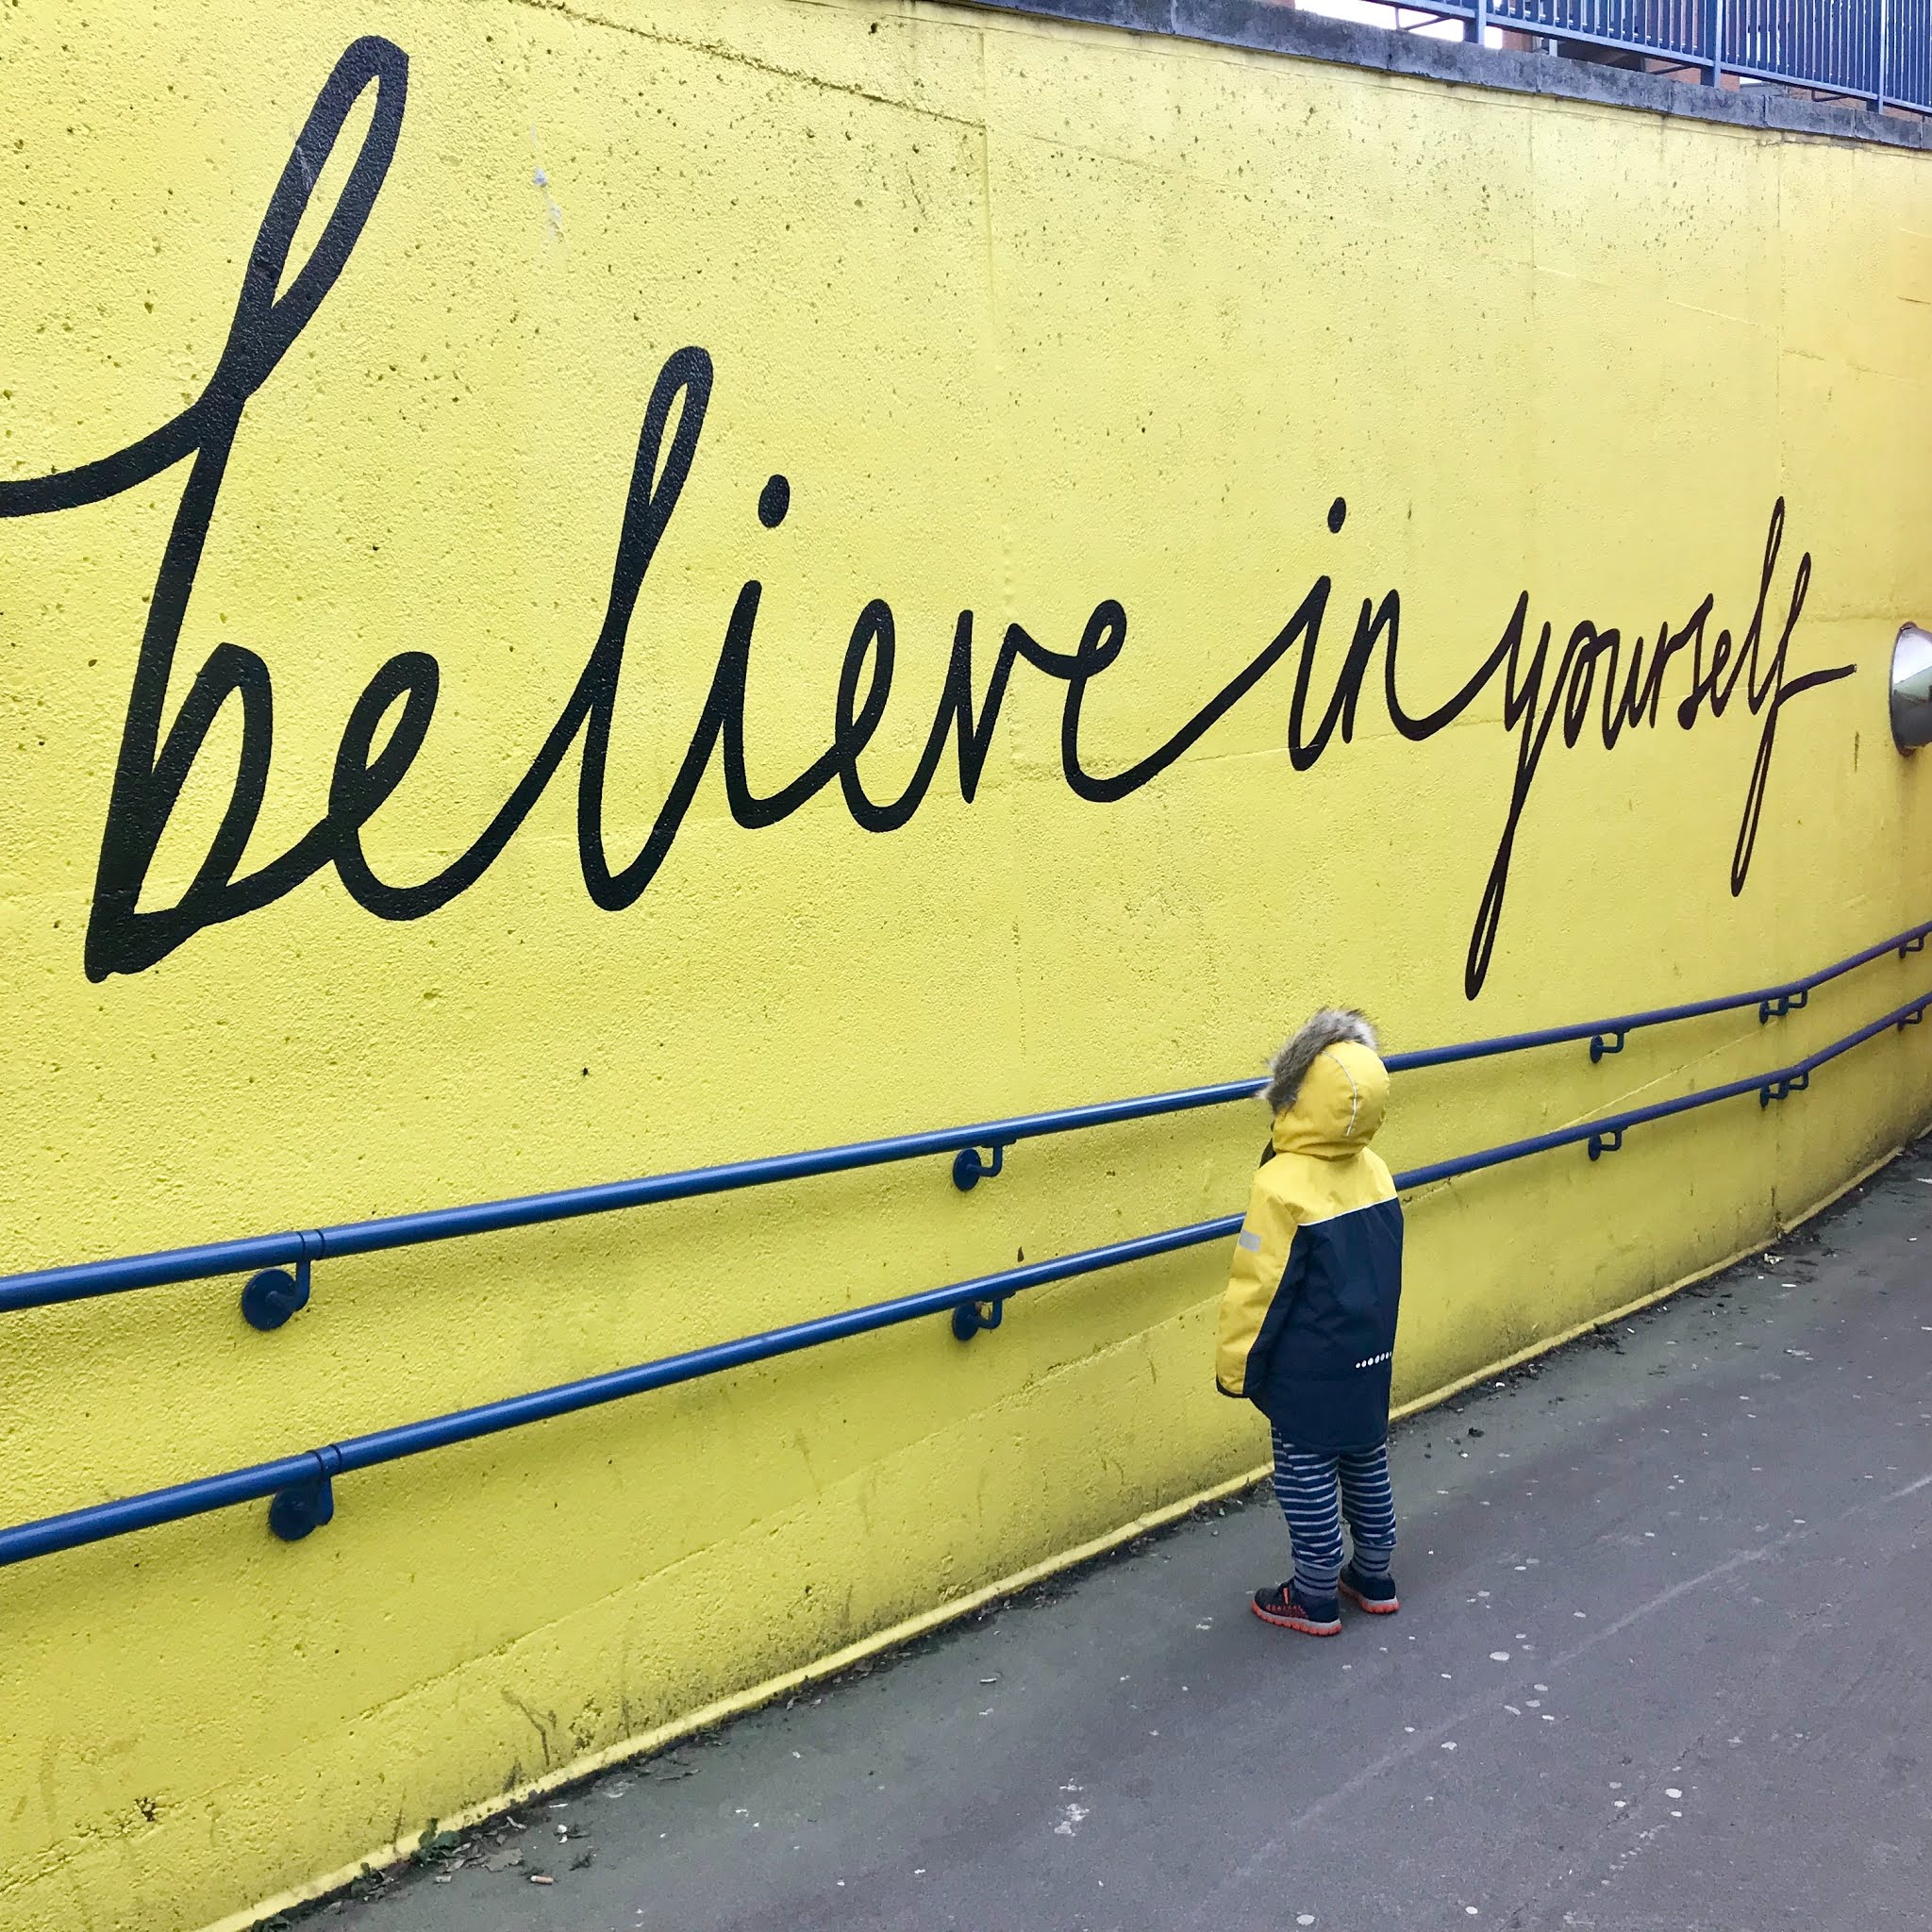 'believe' graffiti on a yellow wall